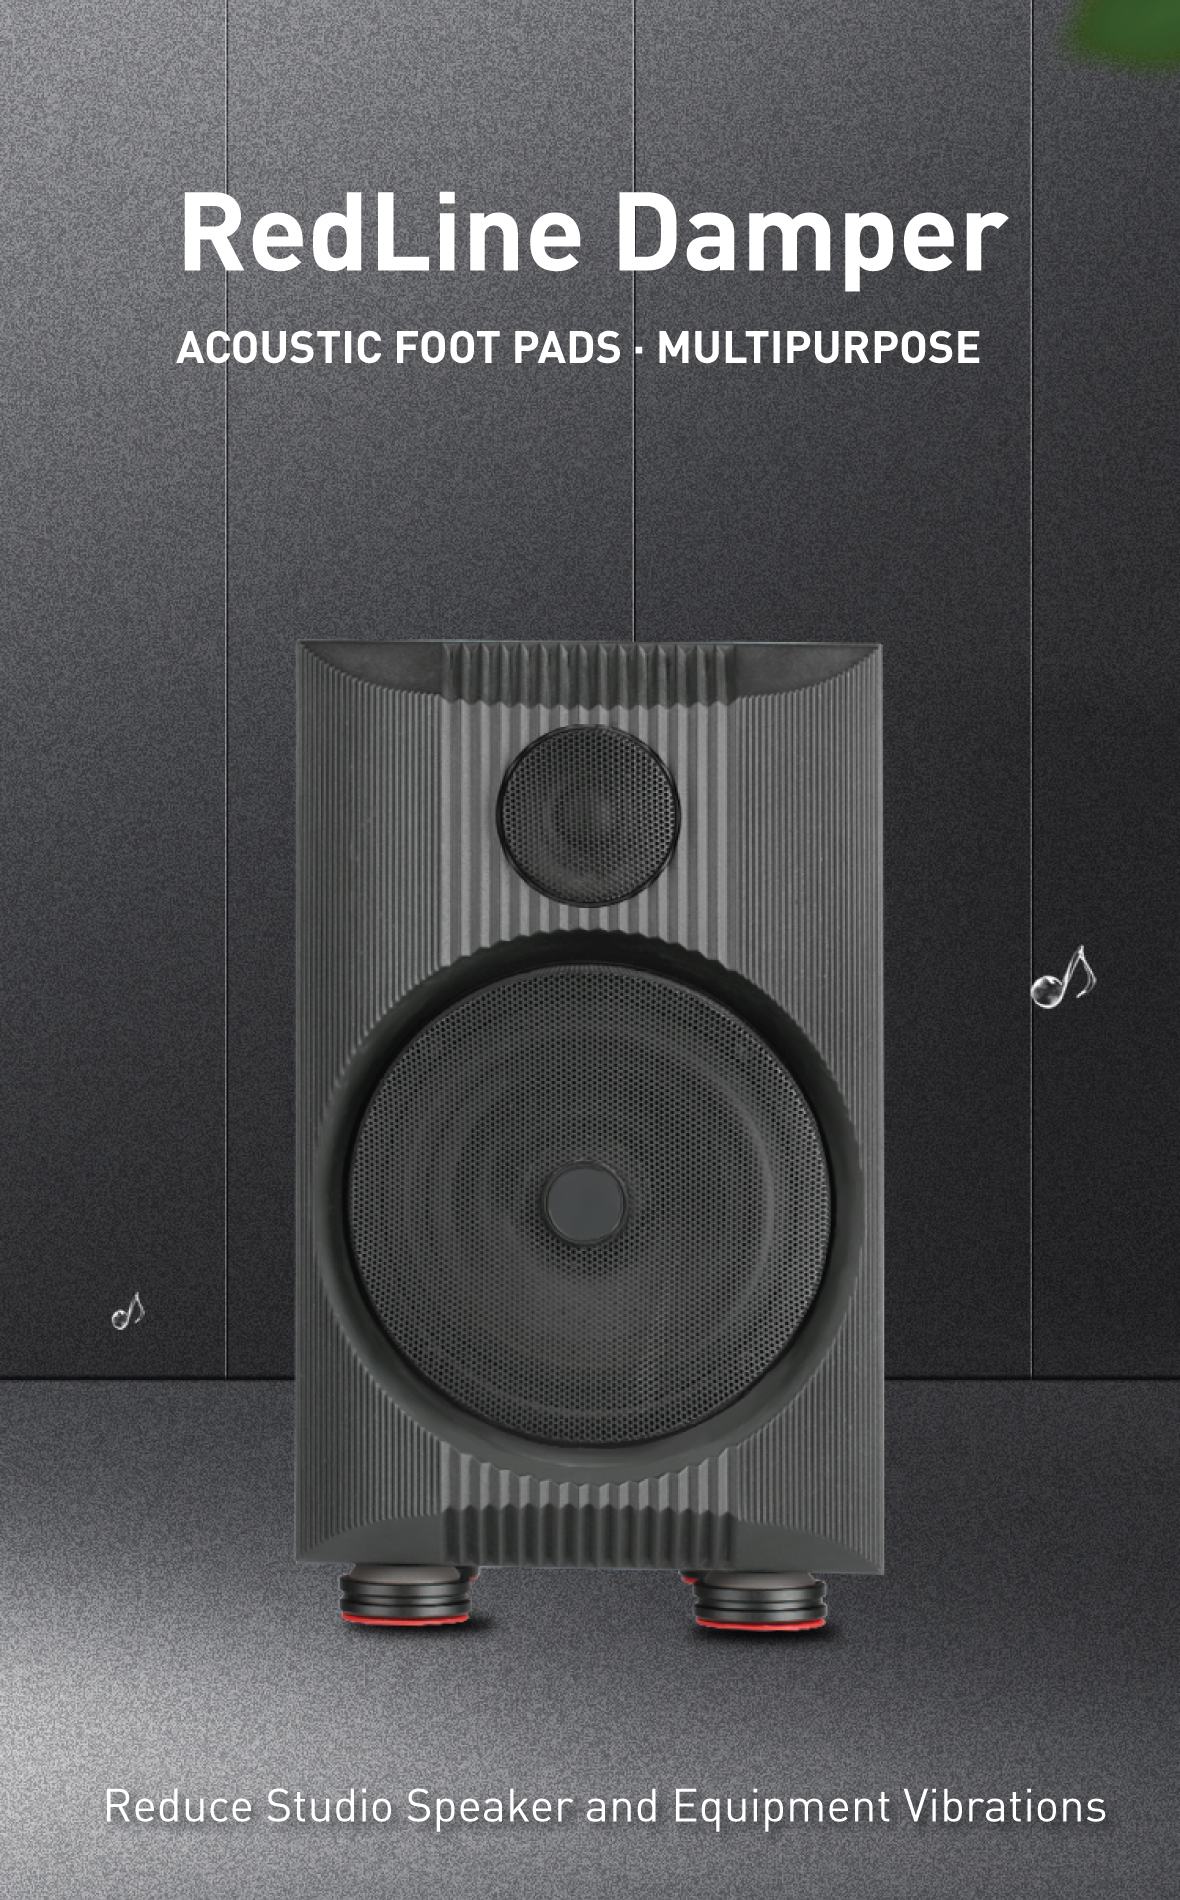 AudioBastion Redline Damper: Reduce Studio Speaker and Equipment Vibrations